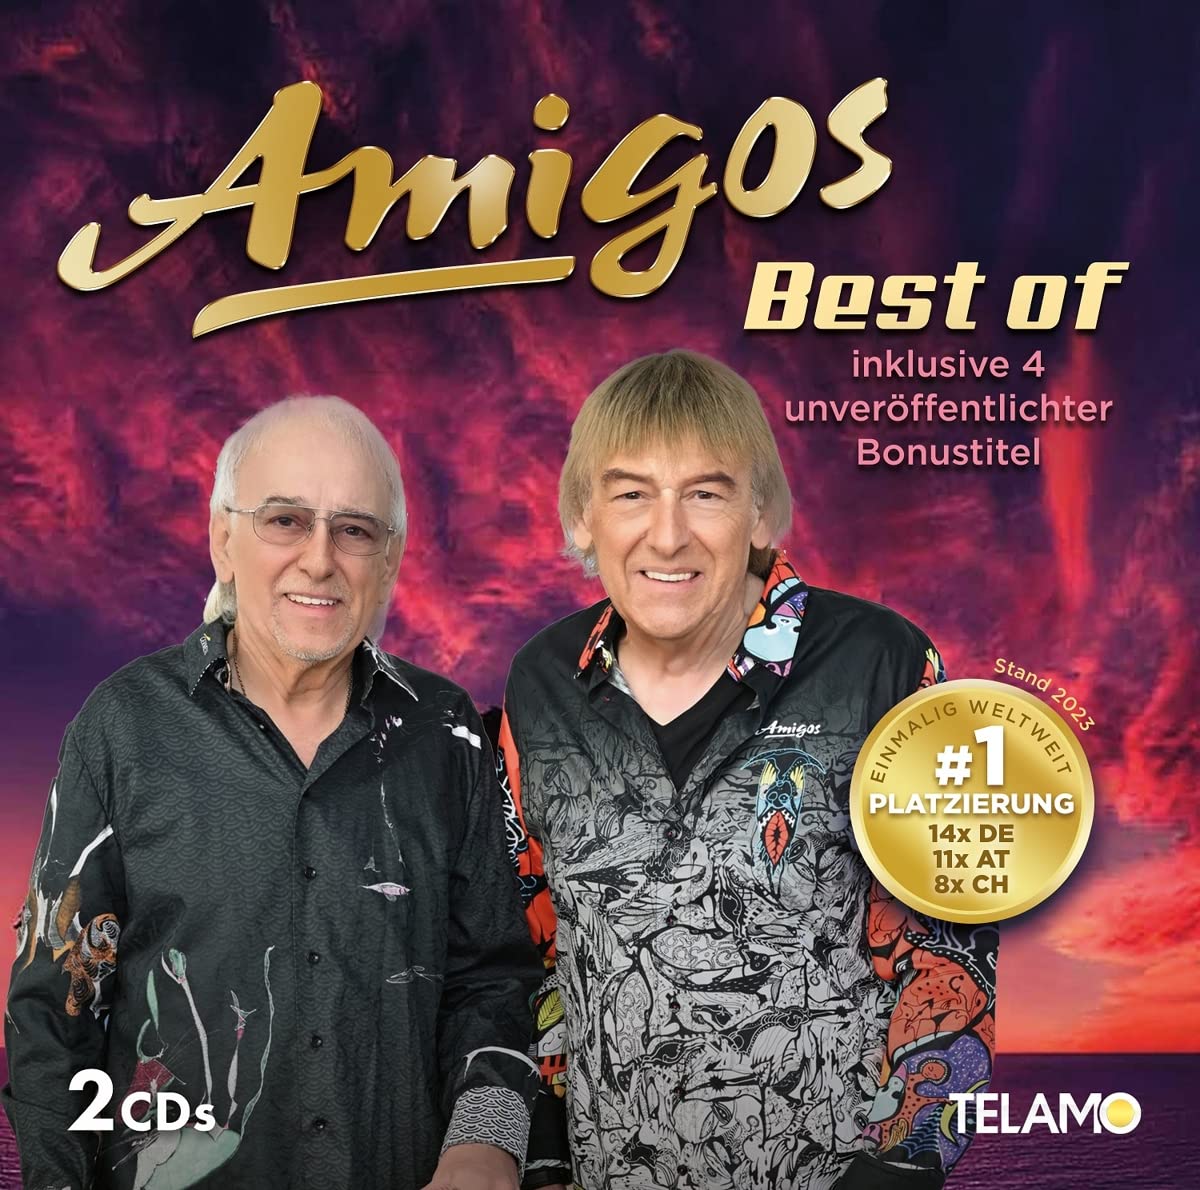 Die-Amigos-Mit-ihrem-neuen-Best-of-Album-wieder-auf-Platz-1-